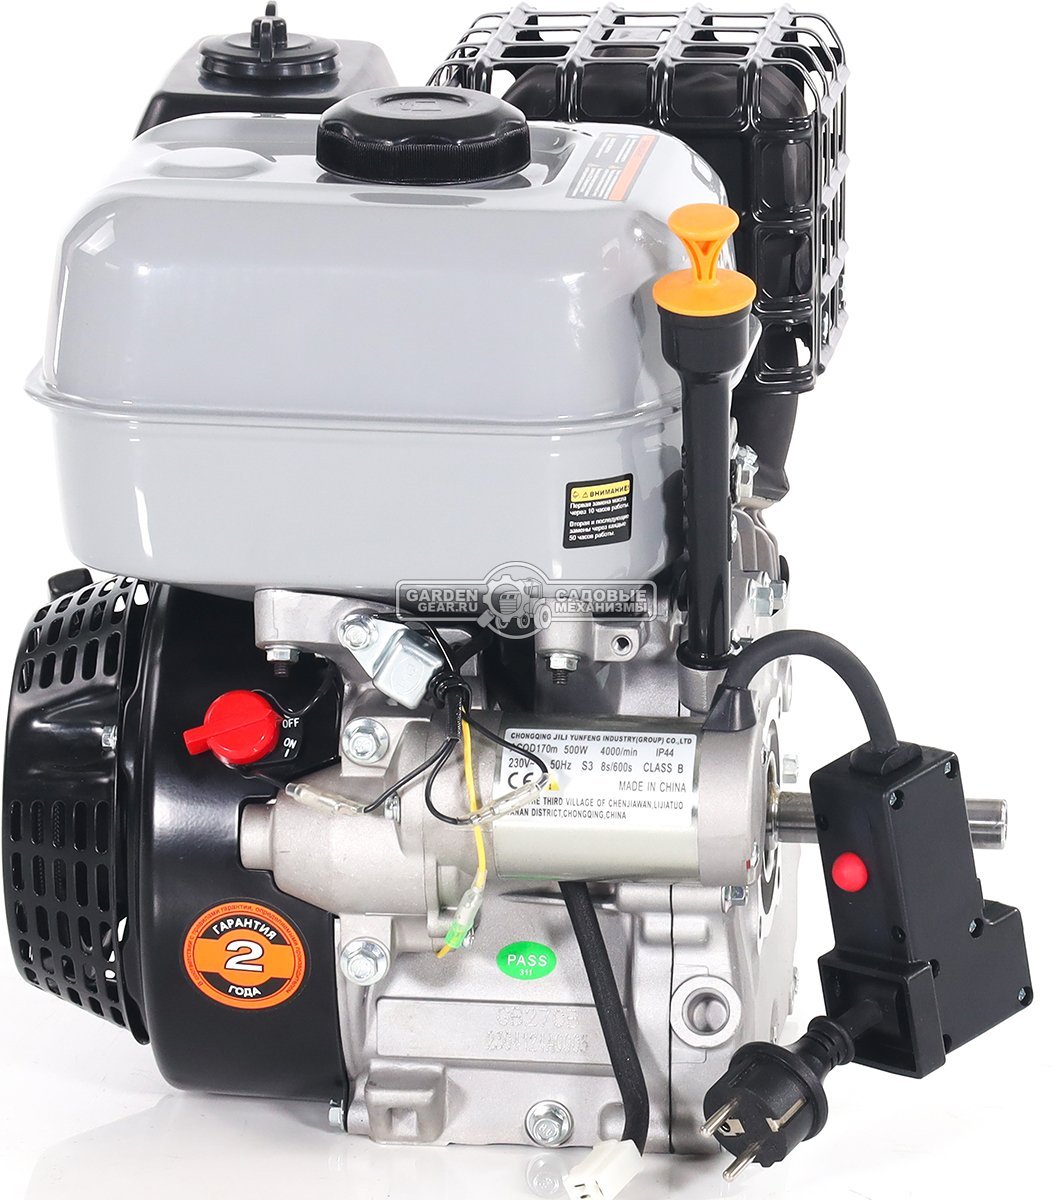 Бензиновый двигатель Zongshen GB270ВE Snow Line (272 куб.см., D 19 мм, L 87 мм, электростартер 230 Вольт, ручной стартер, катушка освещения, 17,2 кг.)